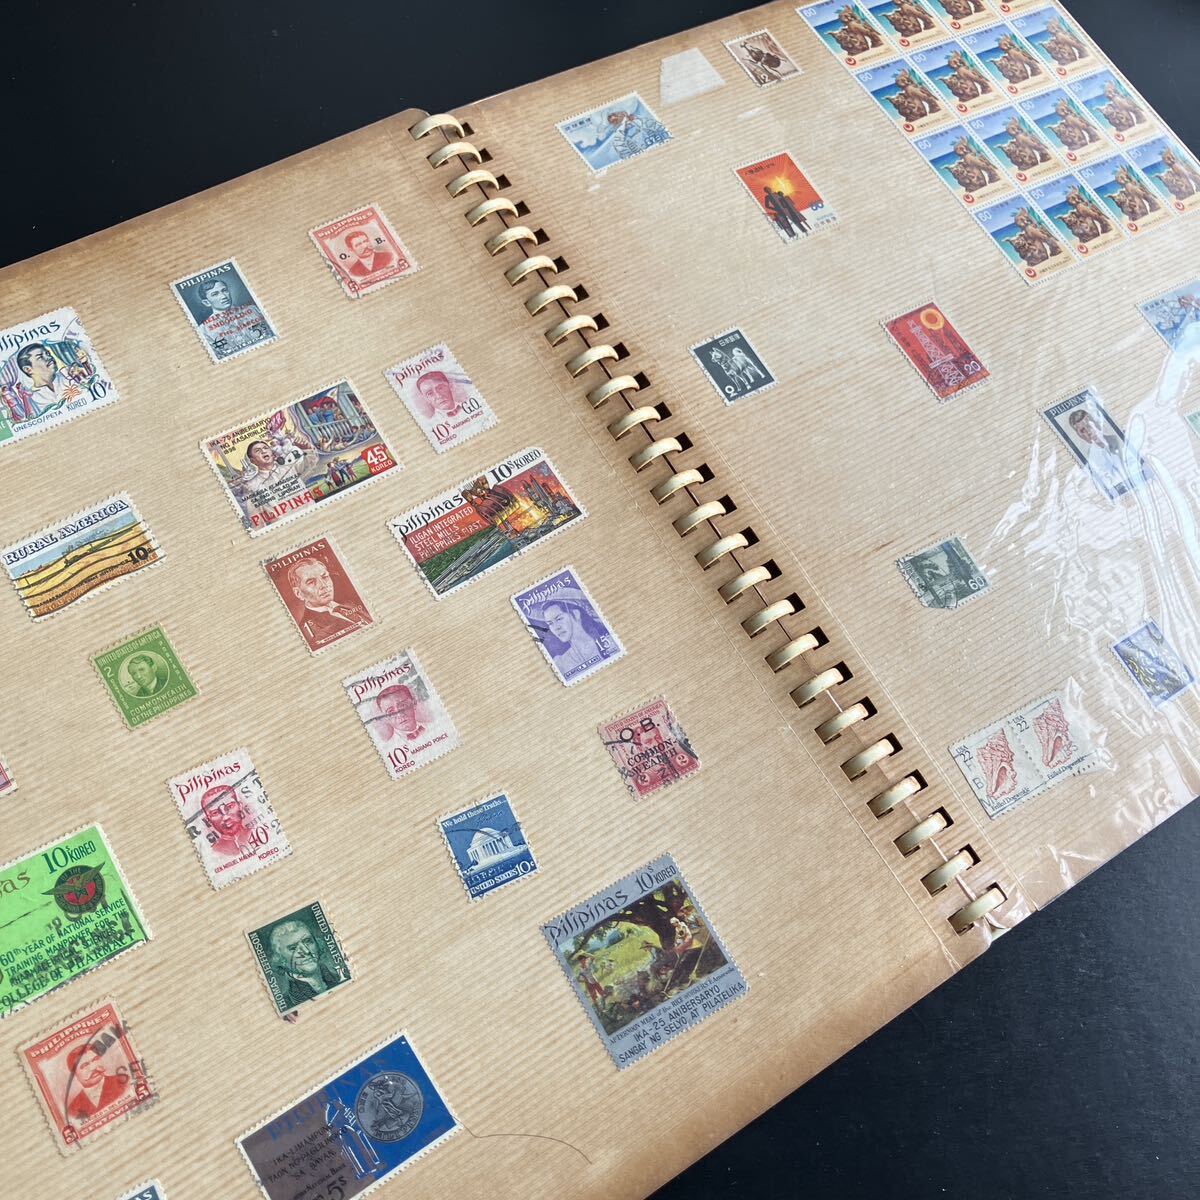 日本郵便切手 琉球郵便切手 外国切手など 各種様々 バラ切手 アルバム コレクション アンティークの画像1